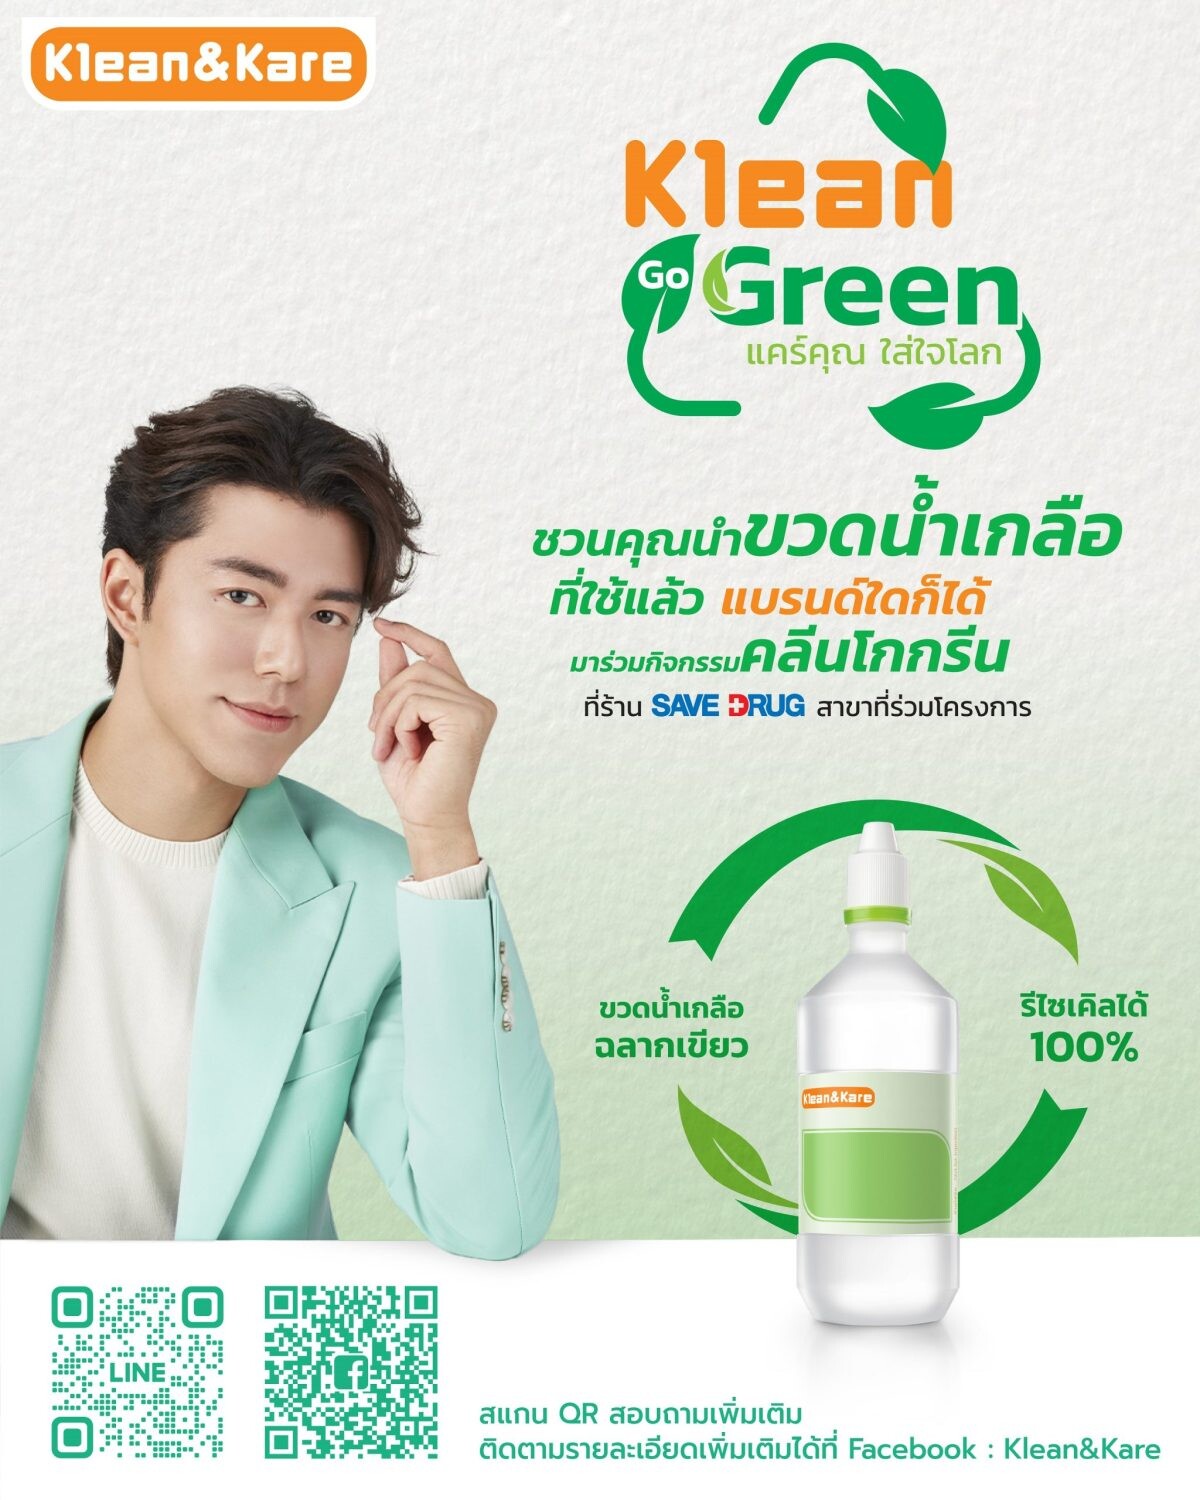 Klean&amp;Kare ชวนคนไทยร่วมบริจาคขวดน้ำเกลือใช้แล้ว ในโครงการ "KLEAN GO GREEN แคร์คุณ...ใส่ใจโลก"